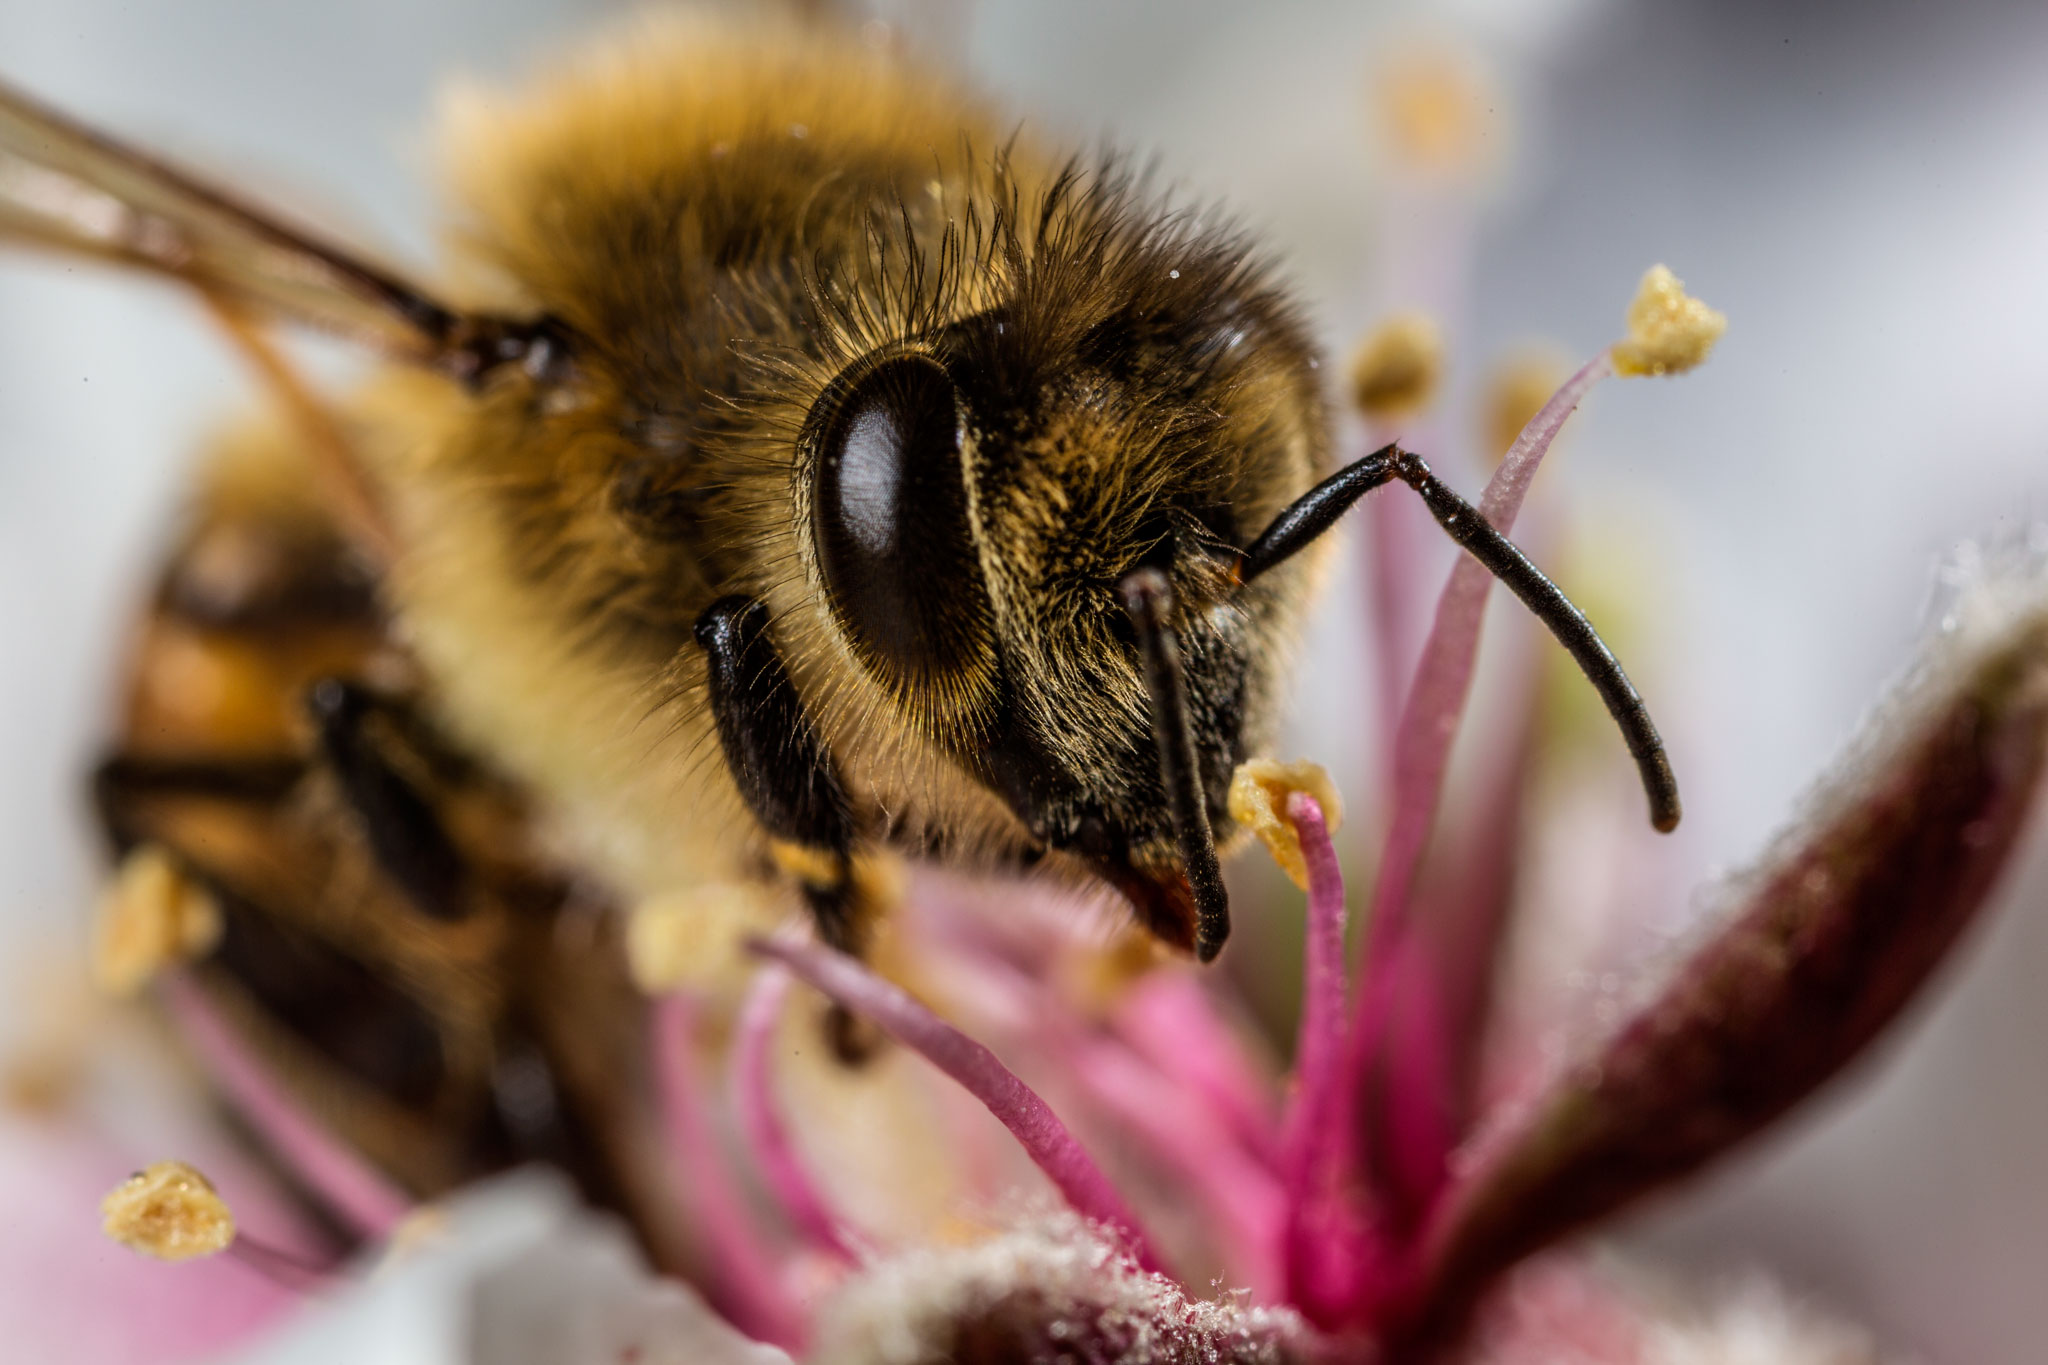 Лесная пчела фото крупным планом